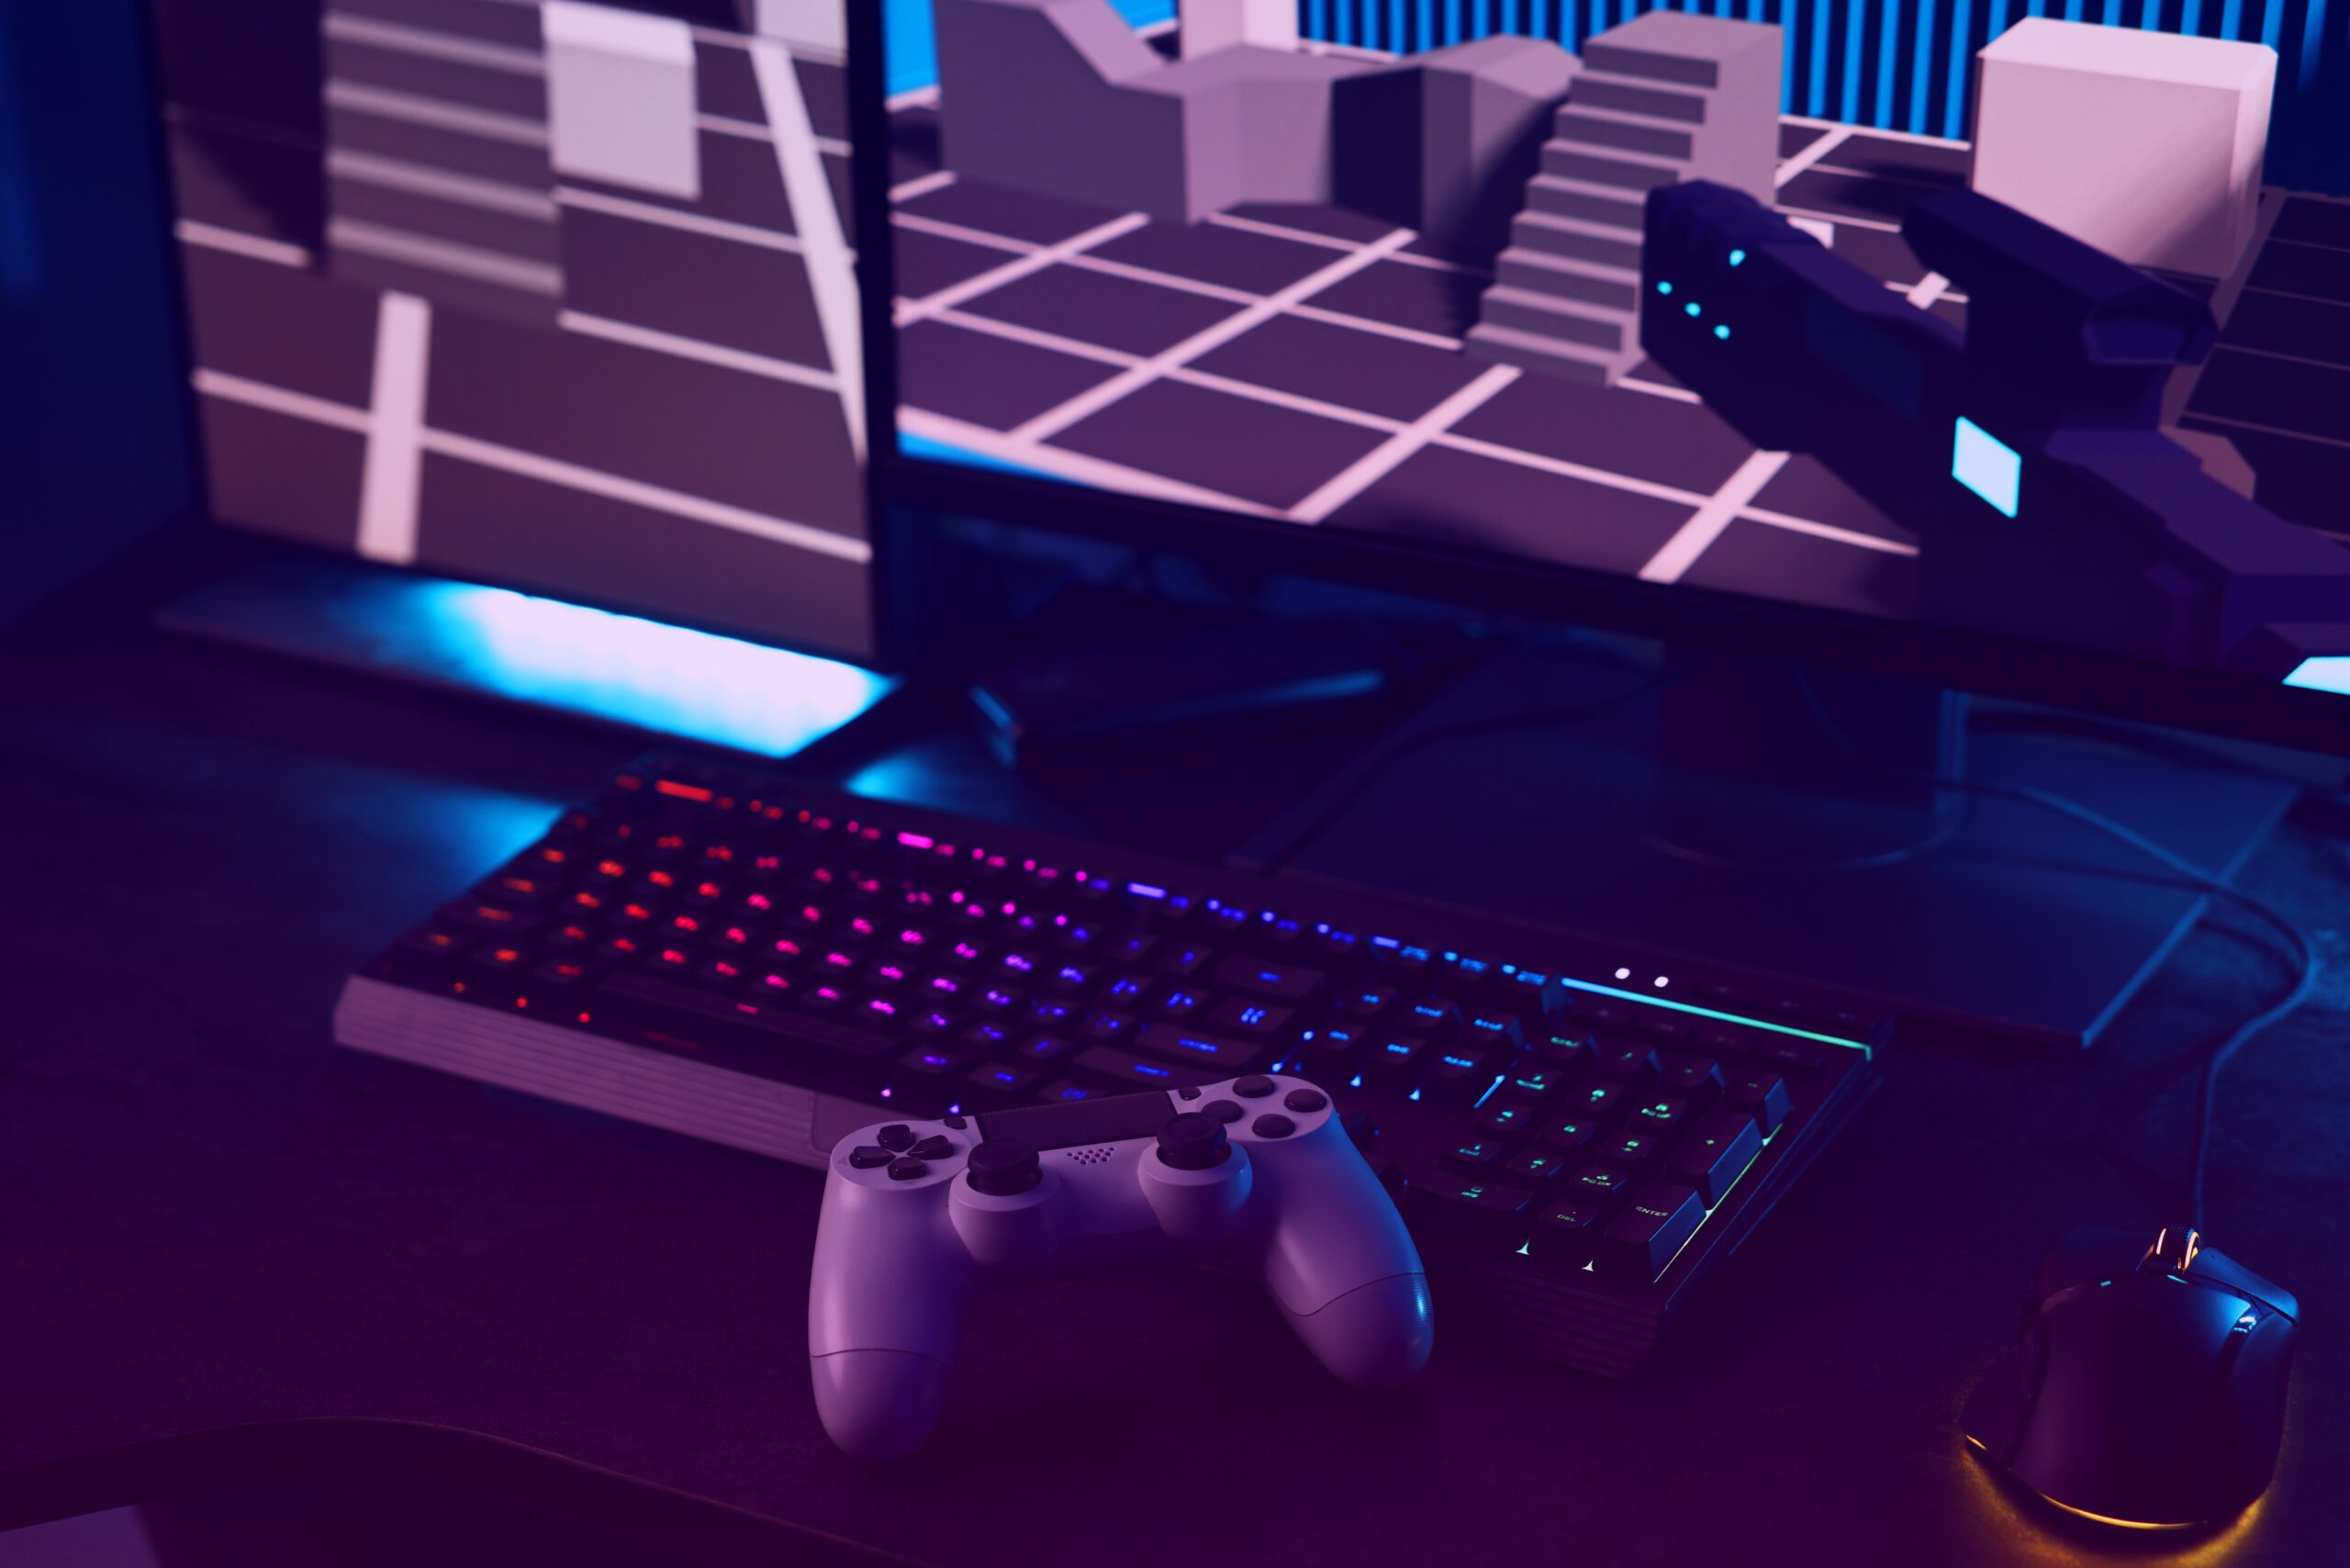 Stacja do gier z podświetlaną klawiaturą, białym kontrolerem do gier i wyświetlaczem z grafiką 3D w oświetleniu neonowym.